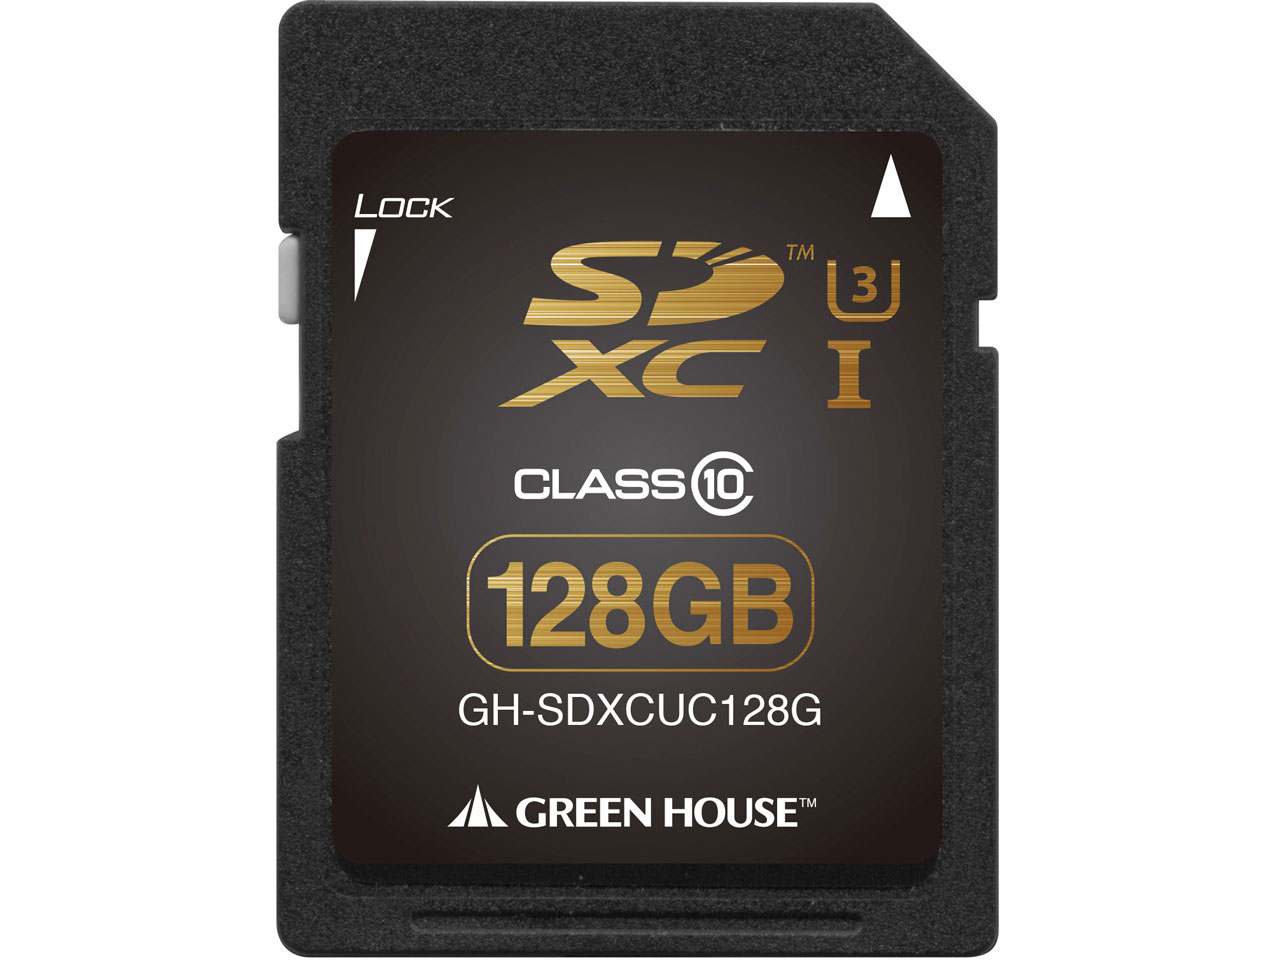 GH-SDXCUC128G [128GB]